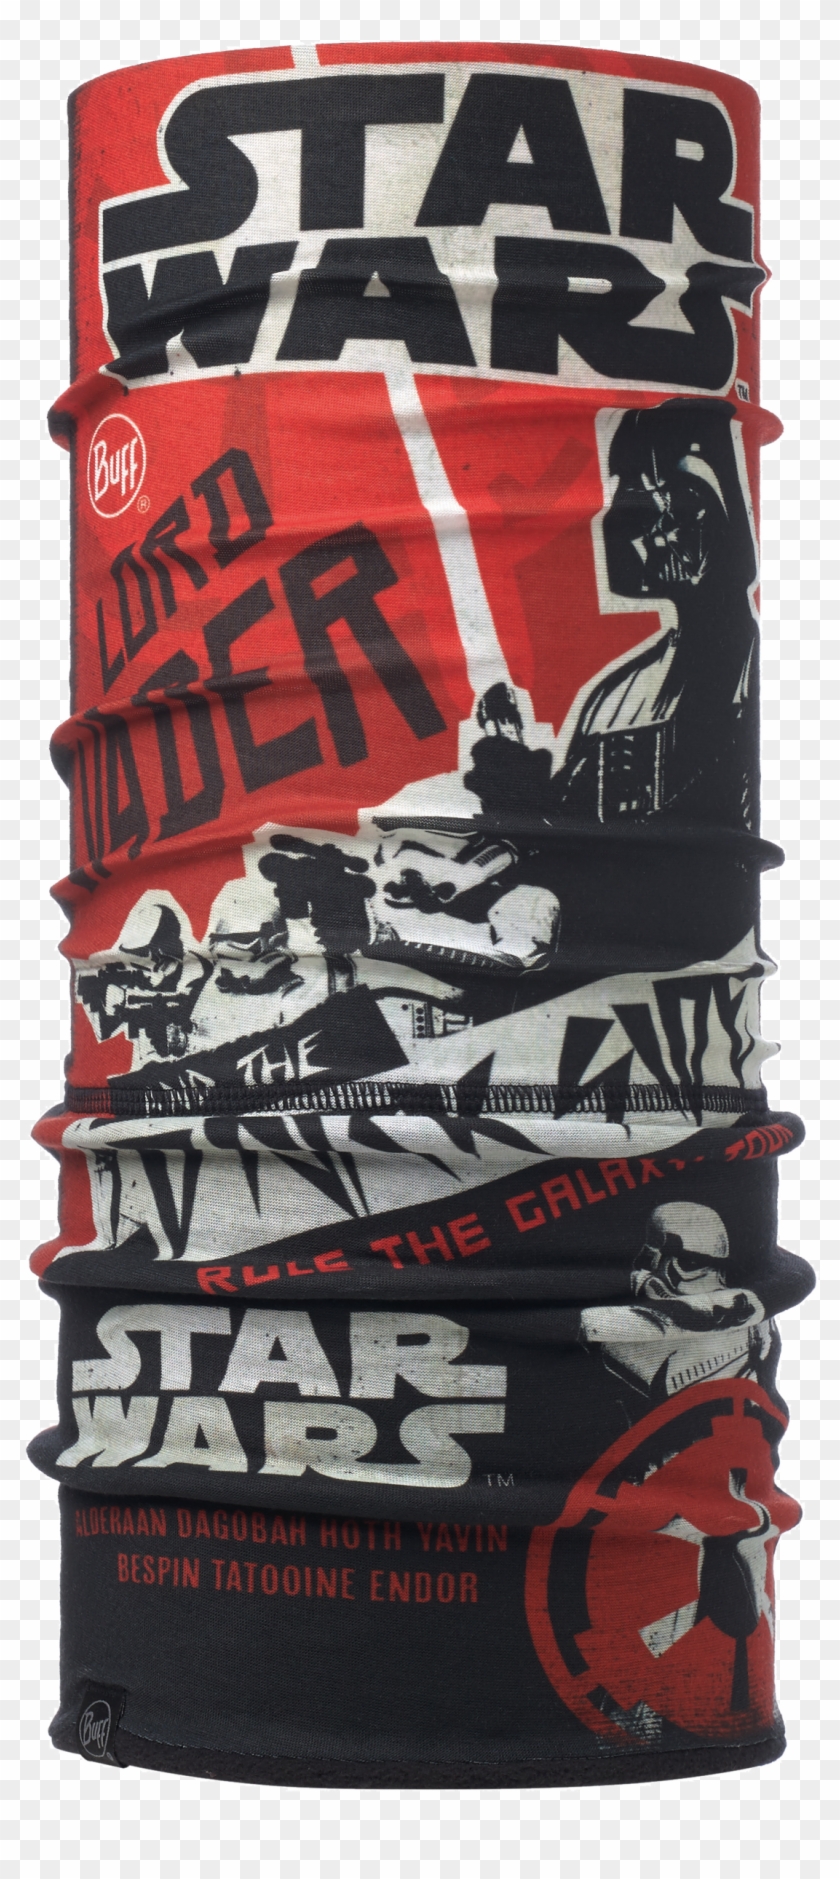 Star Wars Galaxy Tour Red/black [classic Polar Buff] - Buff Star Wars Clipart #4912763